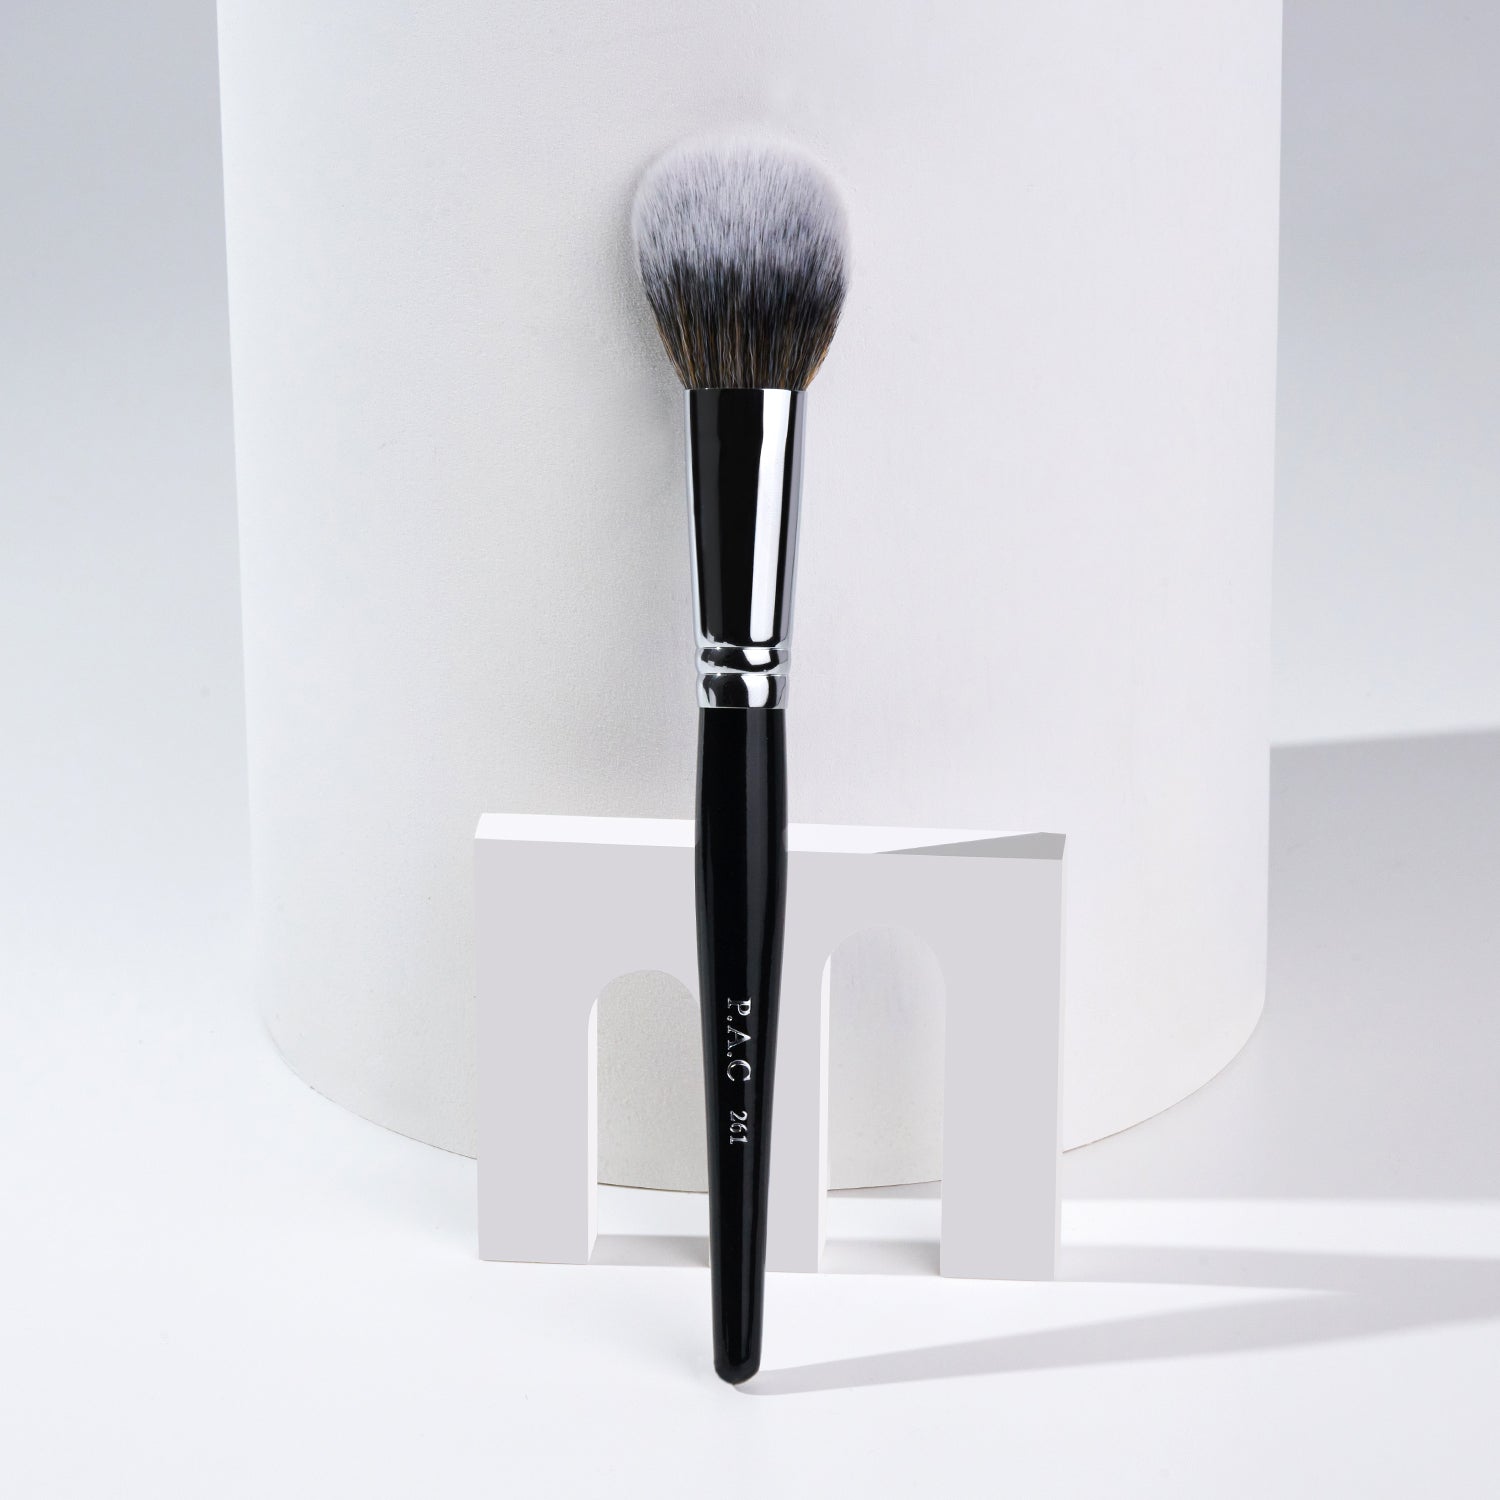 PAC Cosmetics Powder Brush 261